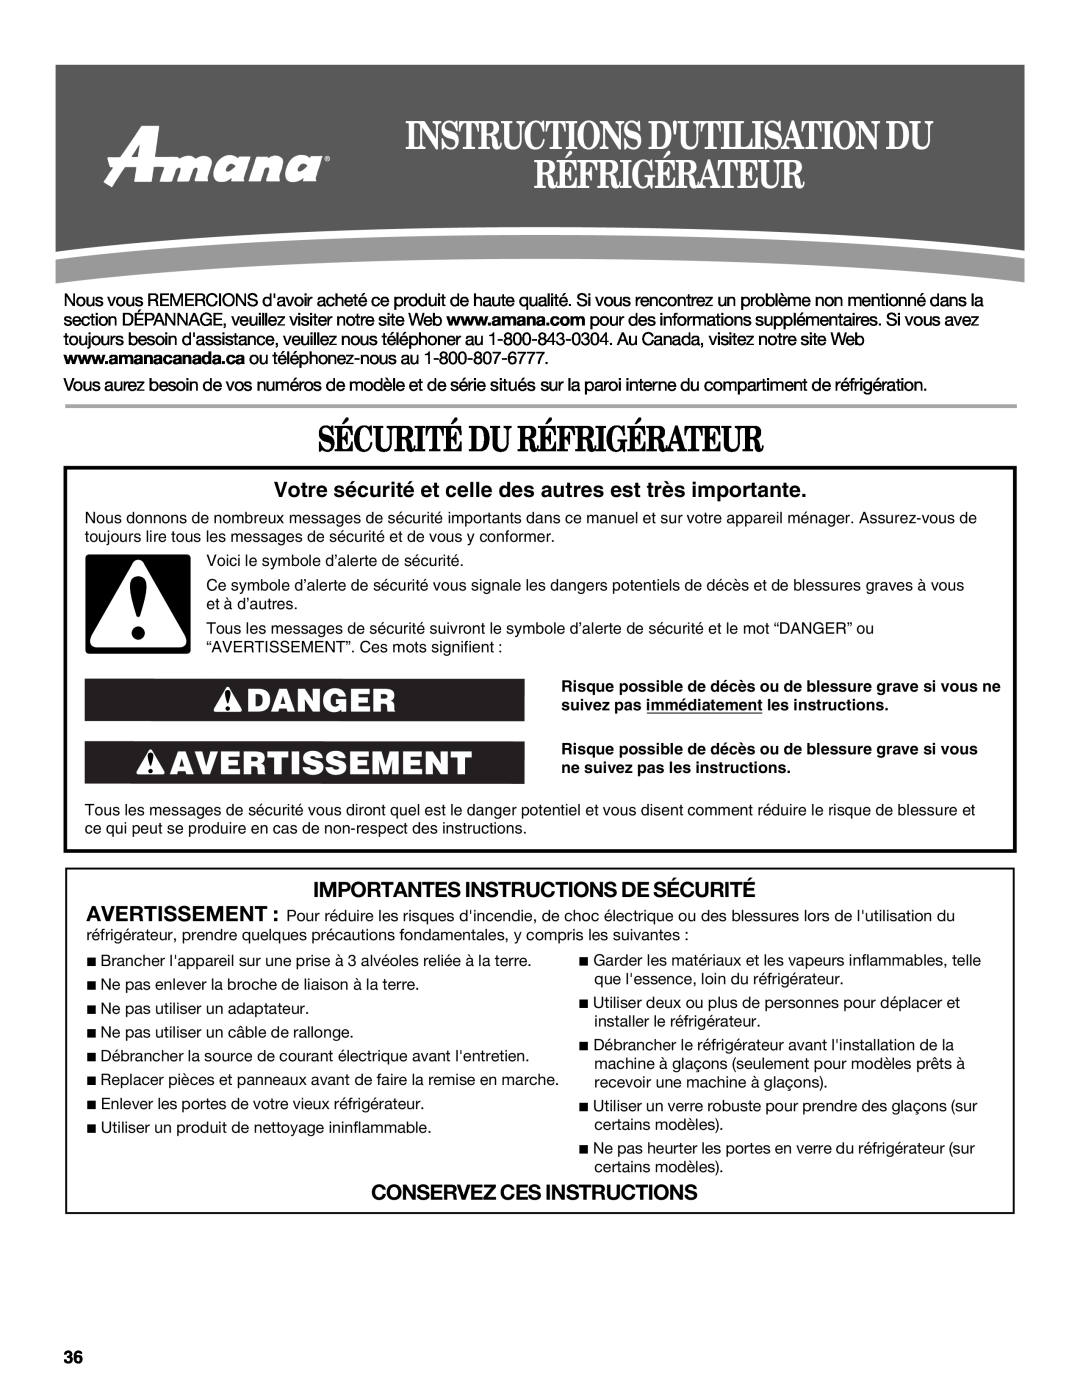 Amana W10321485A Instructions Dutilisation Du Réfrigérateur, Sécurité Du Réfrigérateur, Danger Avertissement 